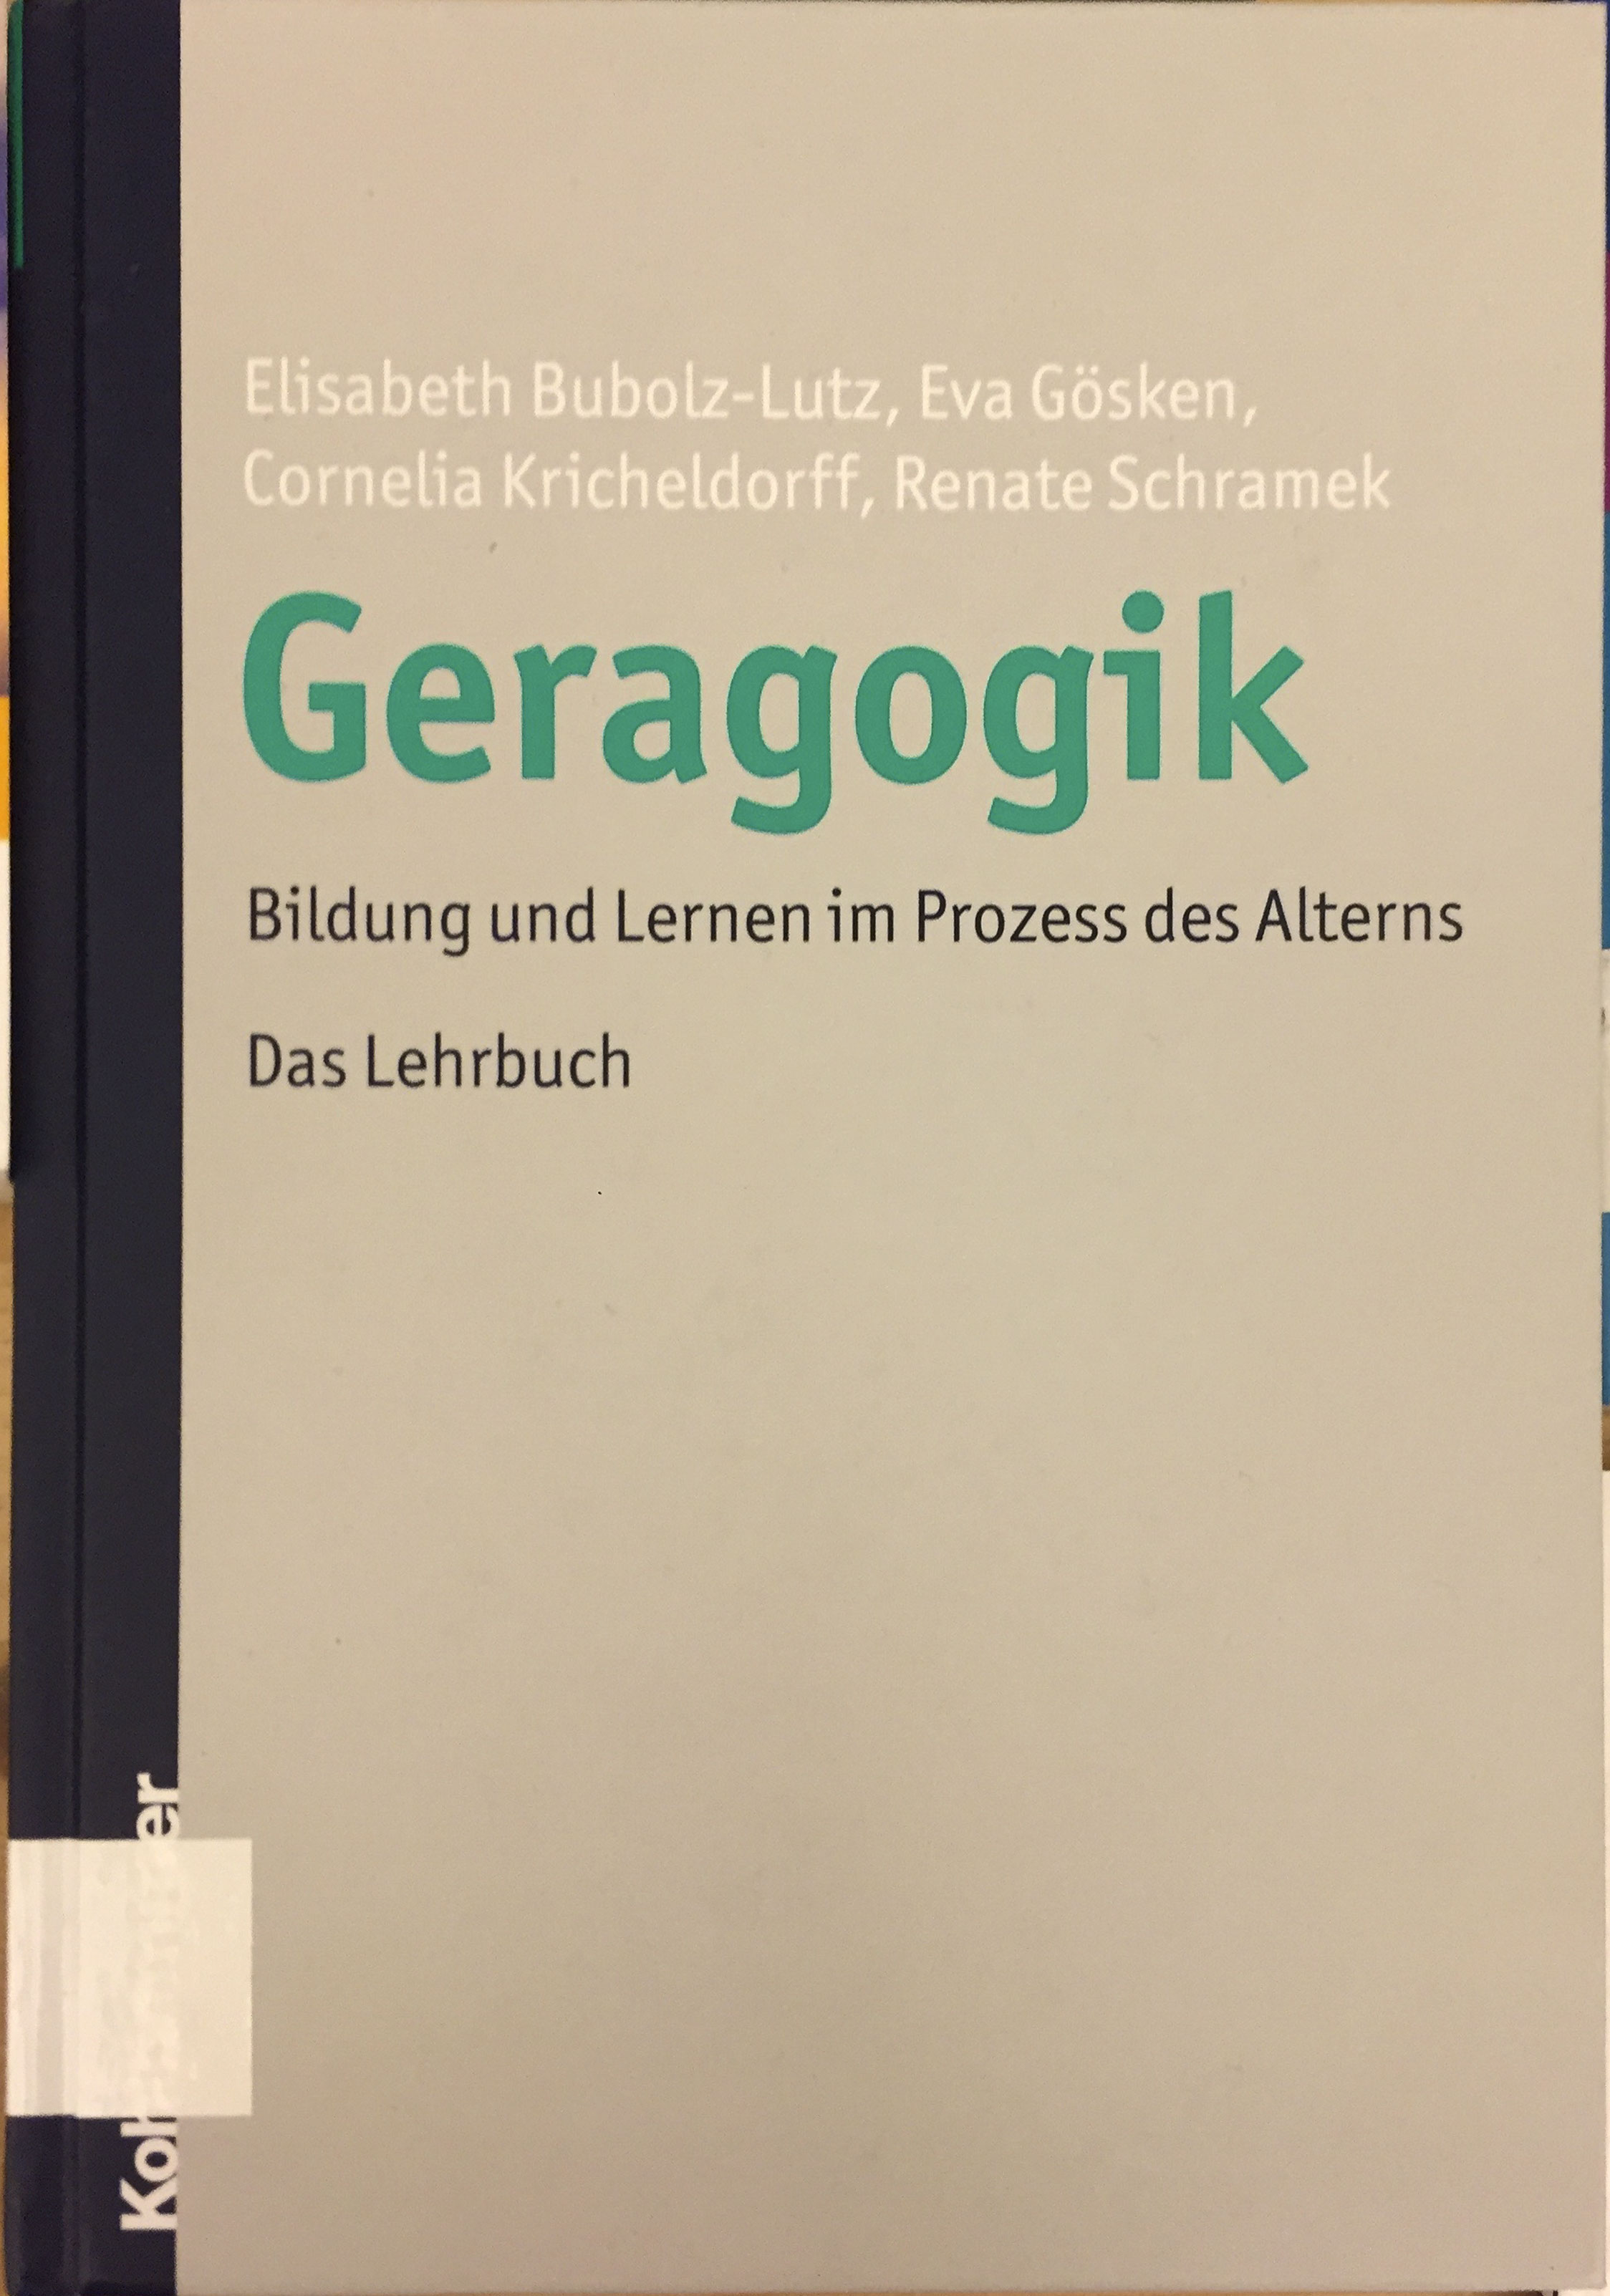 Bubolz-Lutz, Gössen, Kricheldorff, Schramek: Geragogik - Bildung und Lernen im Prozess des Alterns